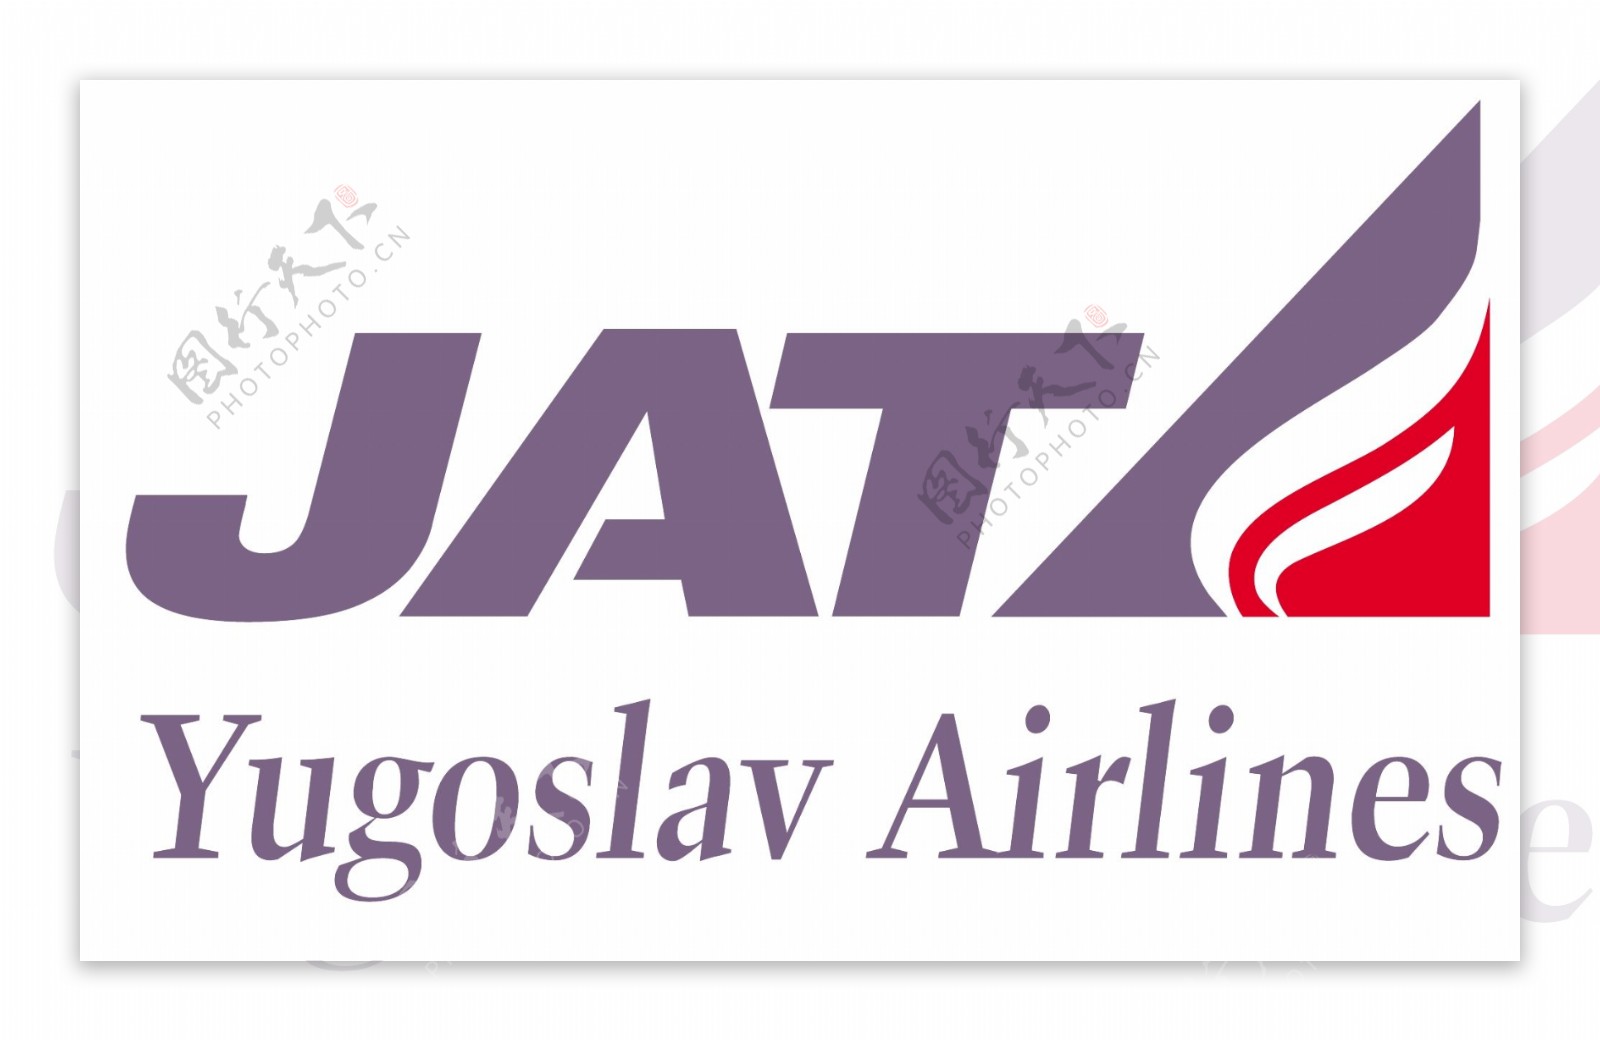 南斯拉夫航空标志